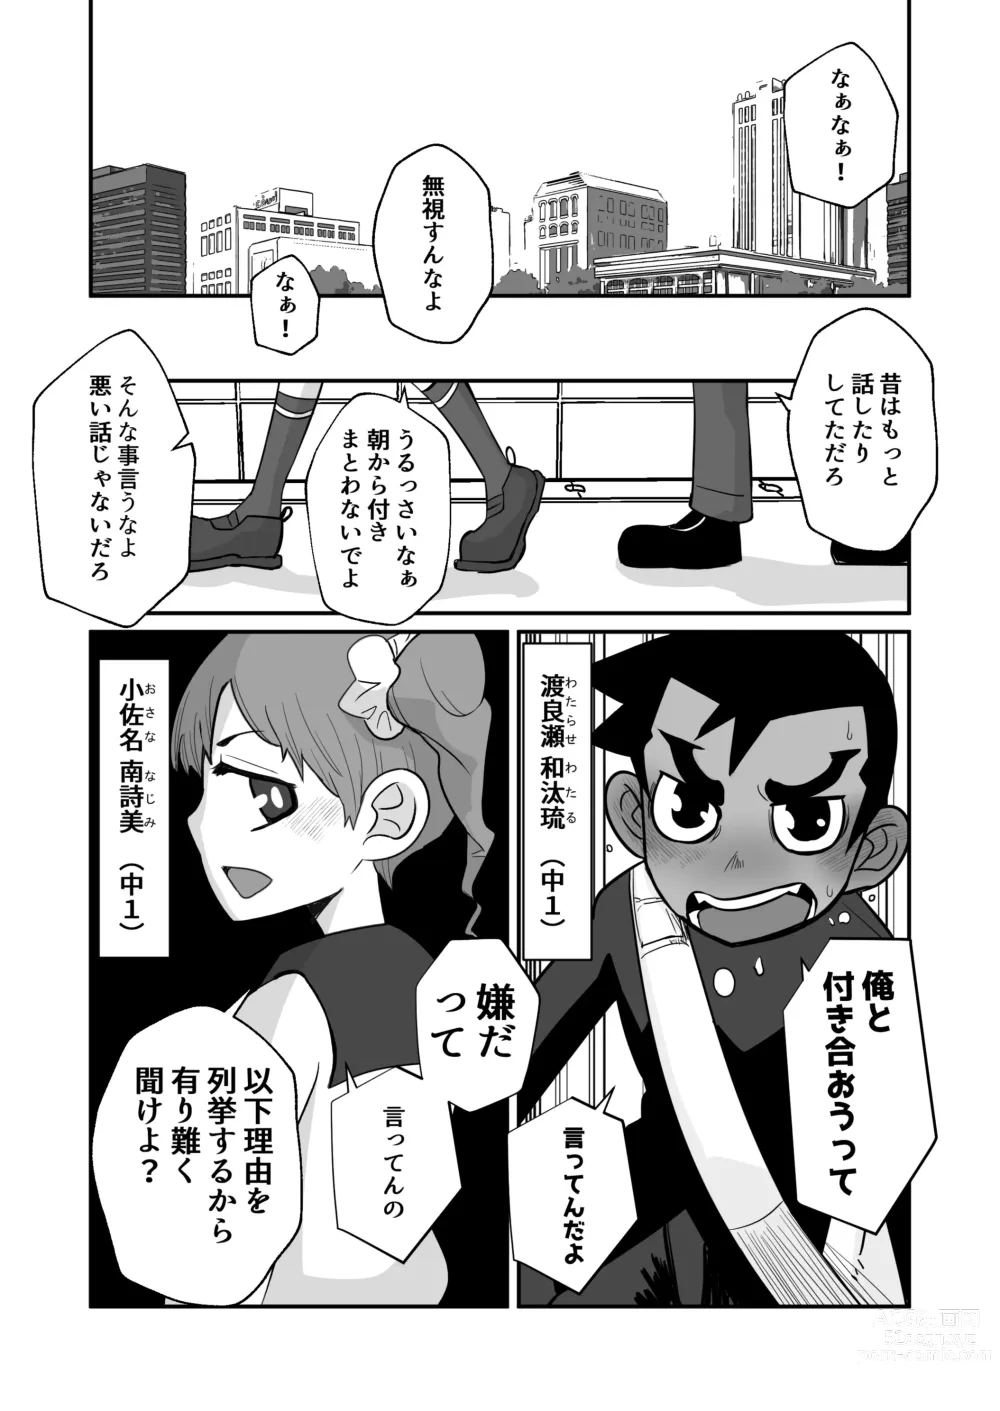 Page 7 of doujinshi Seiyoku no Hanashi.